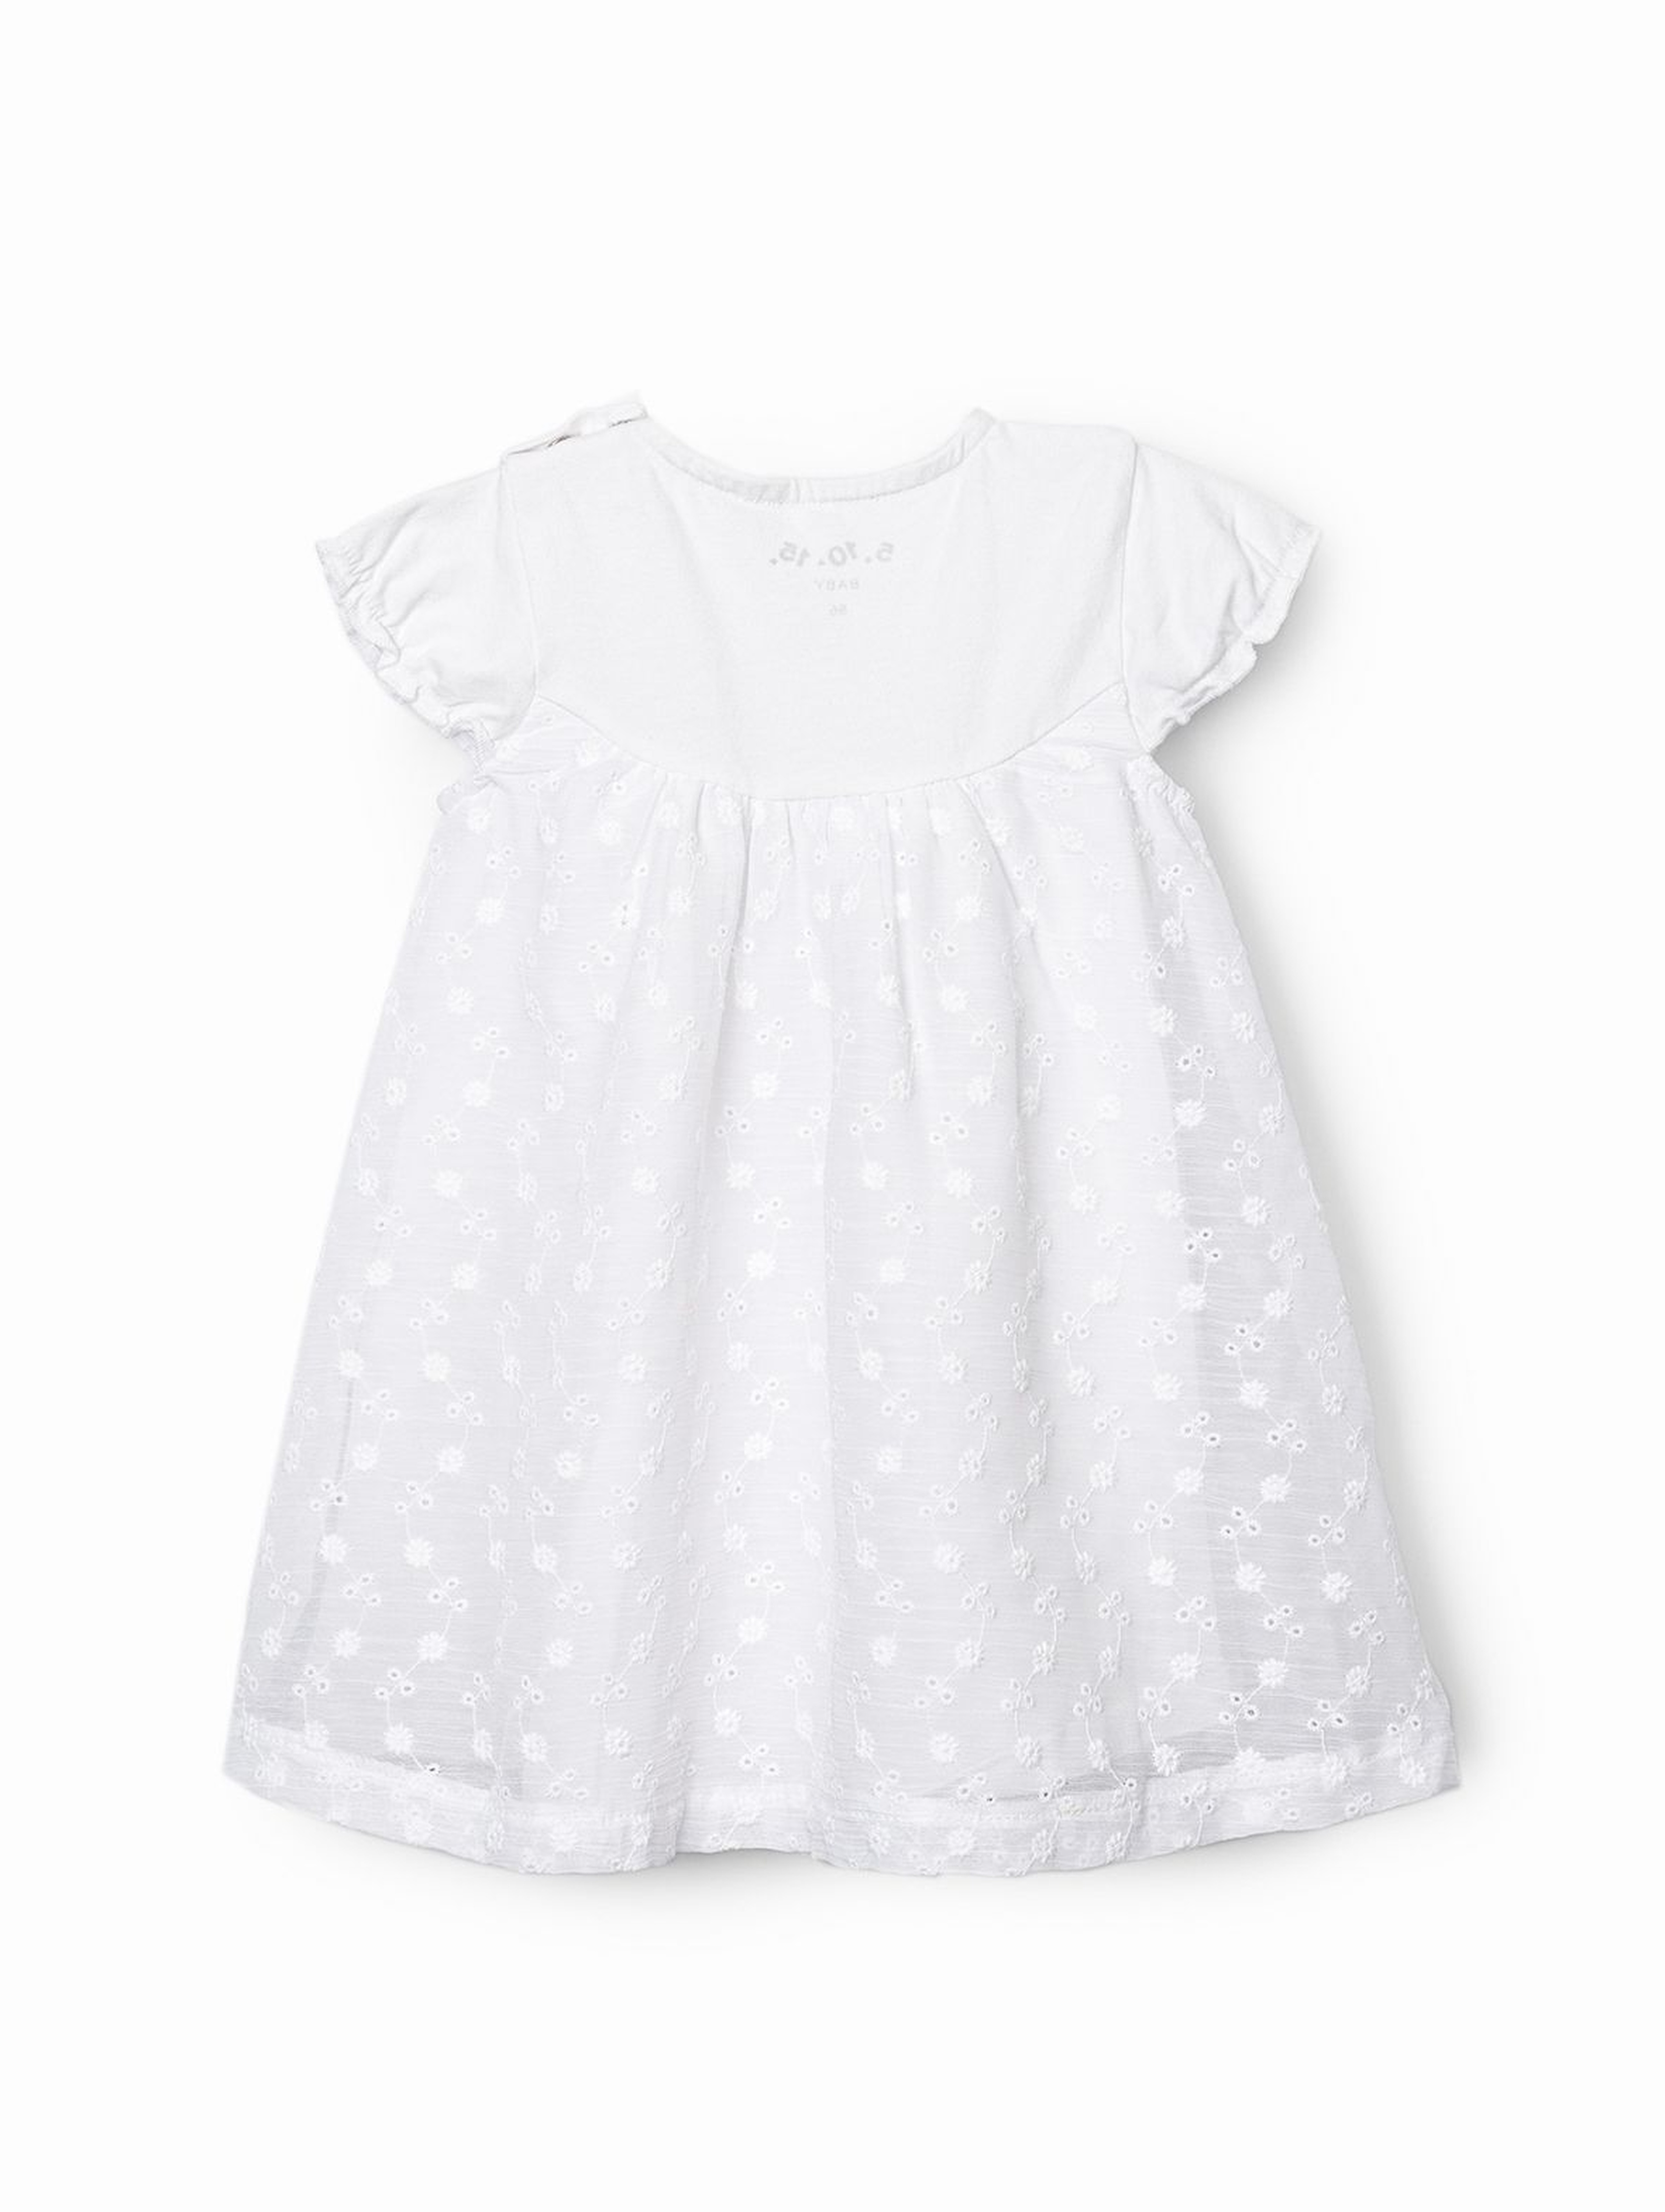 Sukienka niemowlęca w drobne kwiatki - biała